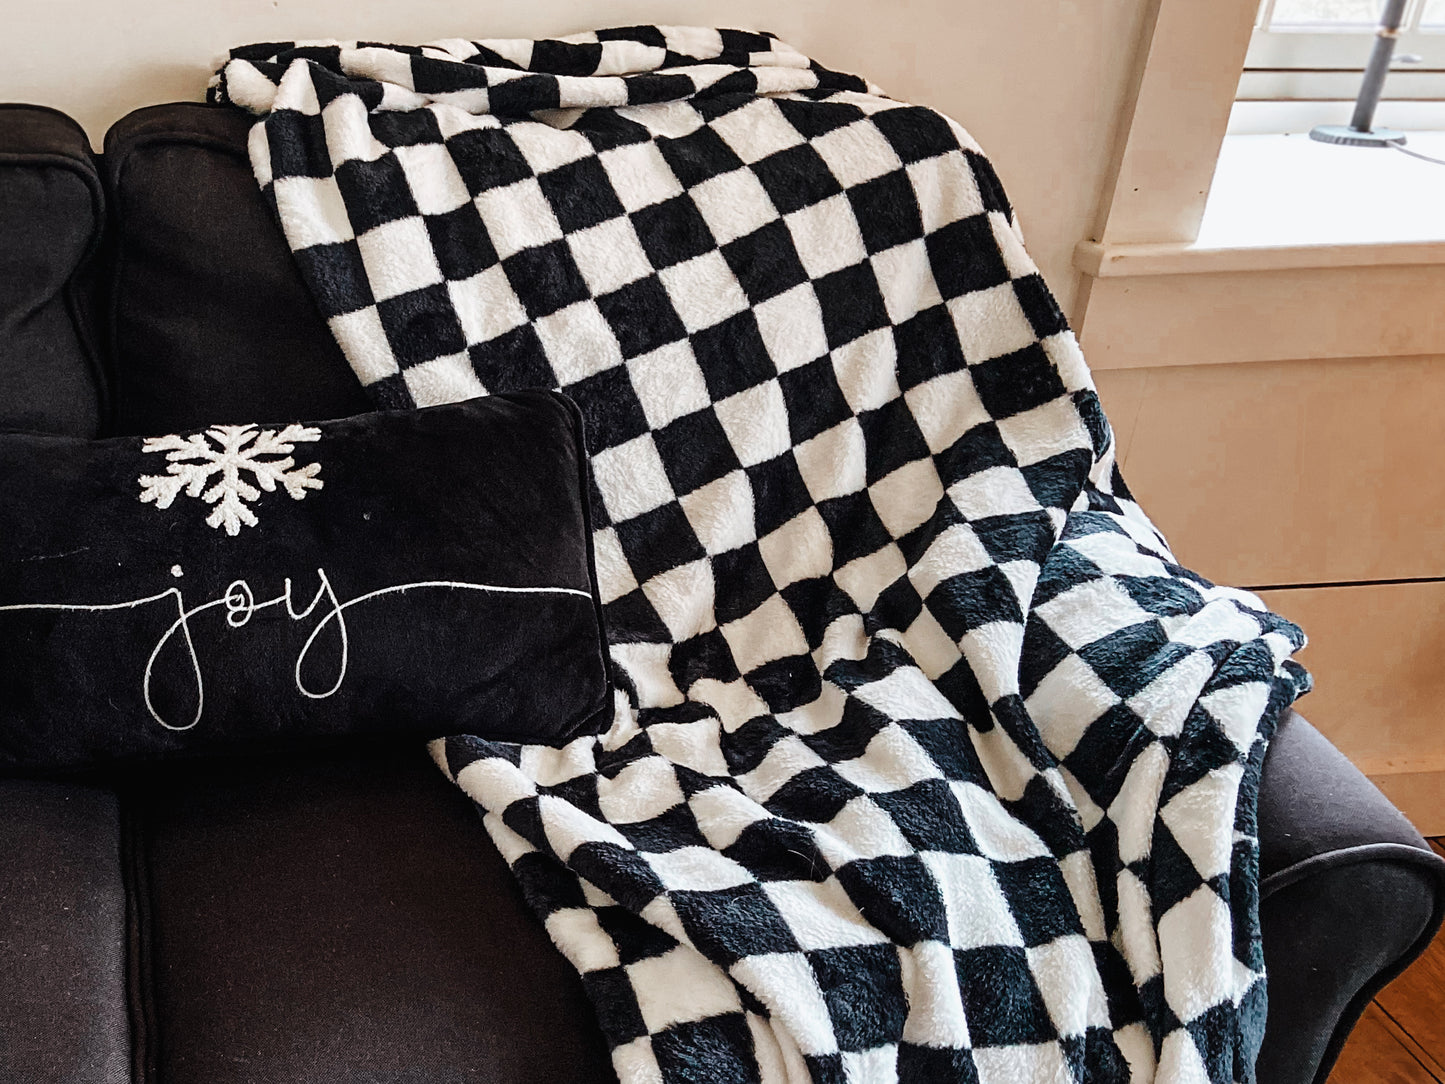 Black & White Checkered Blanket